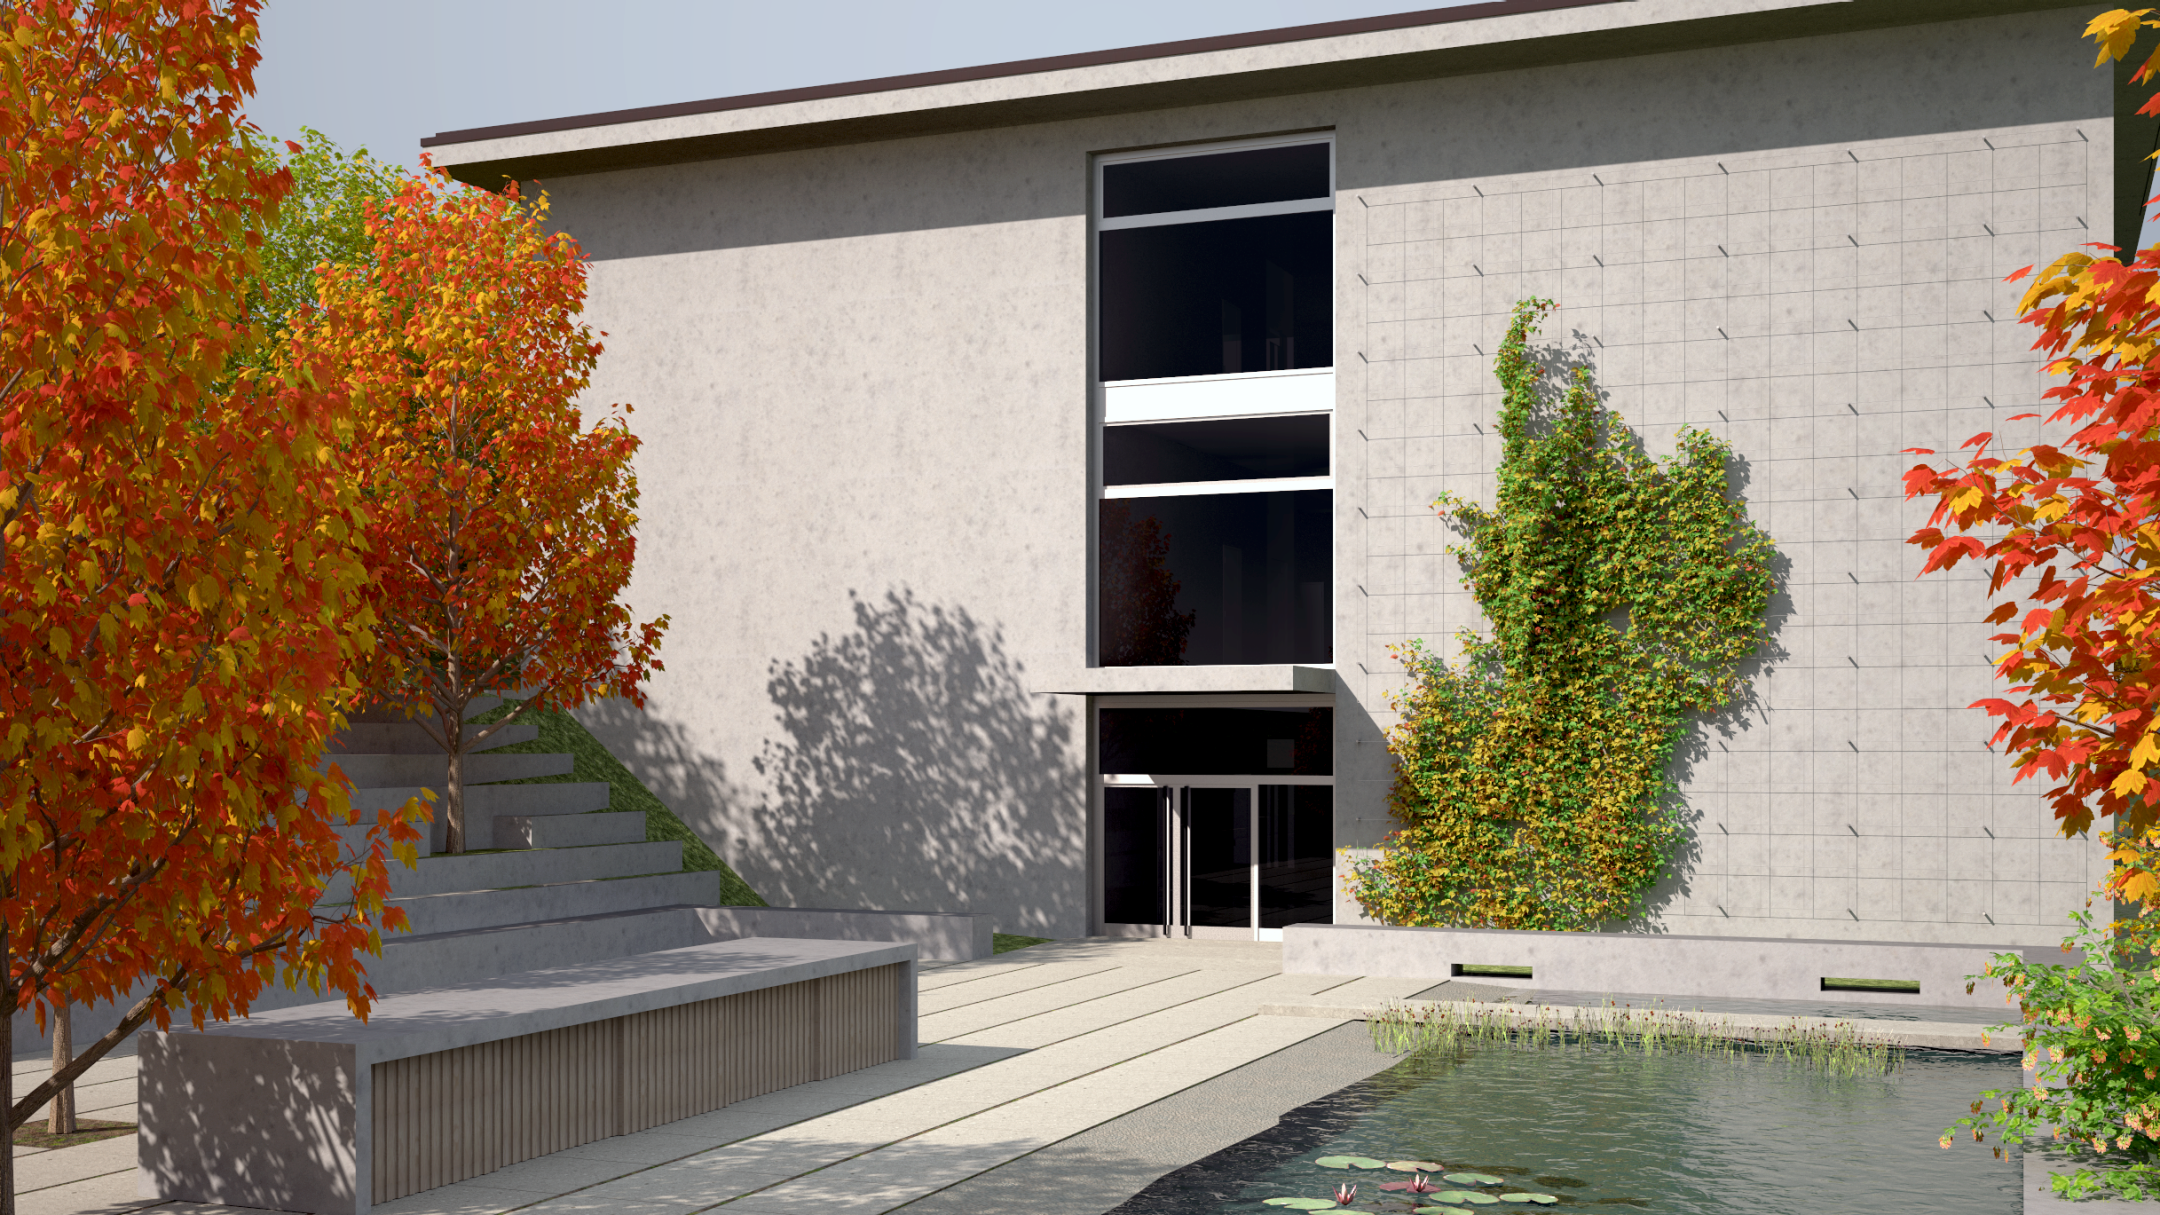 Rendering zeigt Außenschulzimmer & Erweiterungsbau mit Wassergarten für Biologiefachschaft & Arbeits-/Werkflächen für Gestaltung. Bäume sorgen für Schatten.